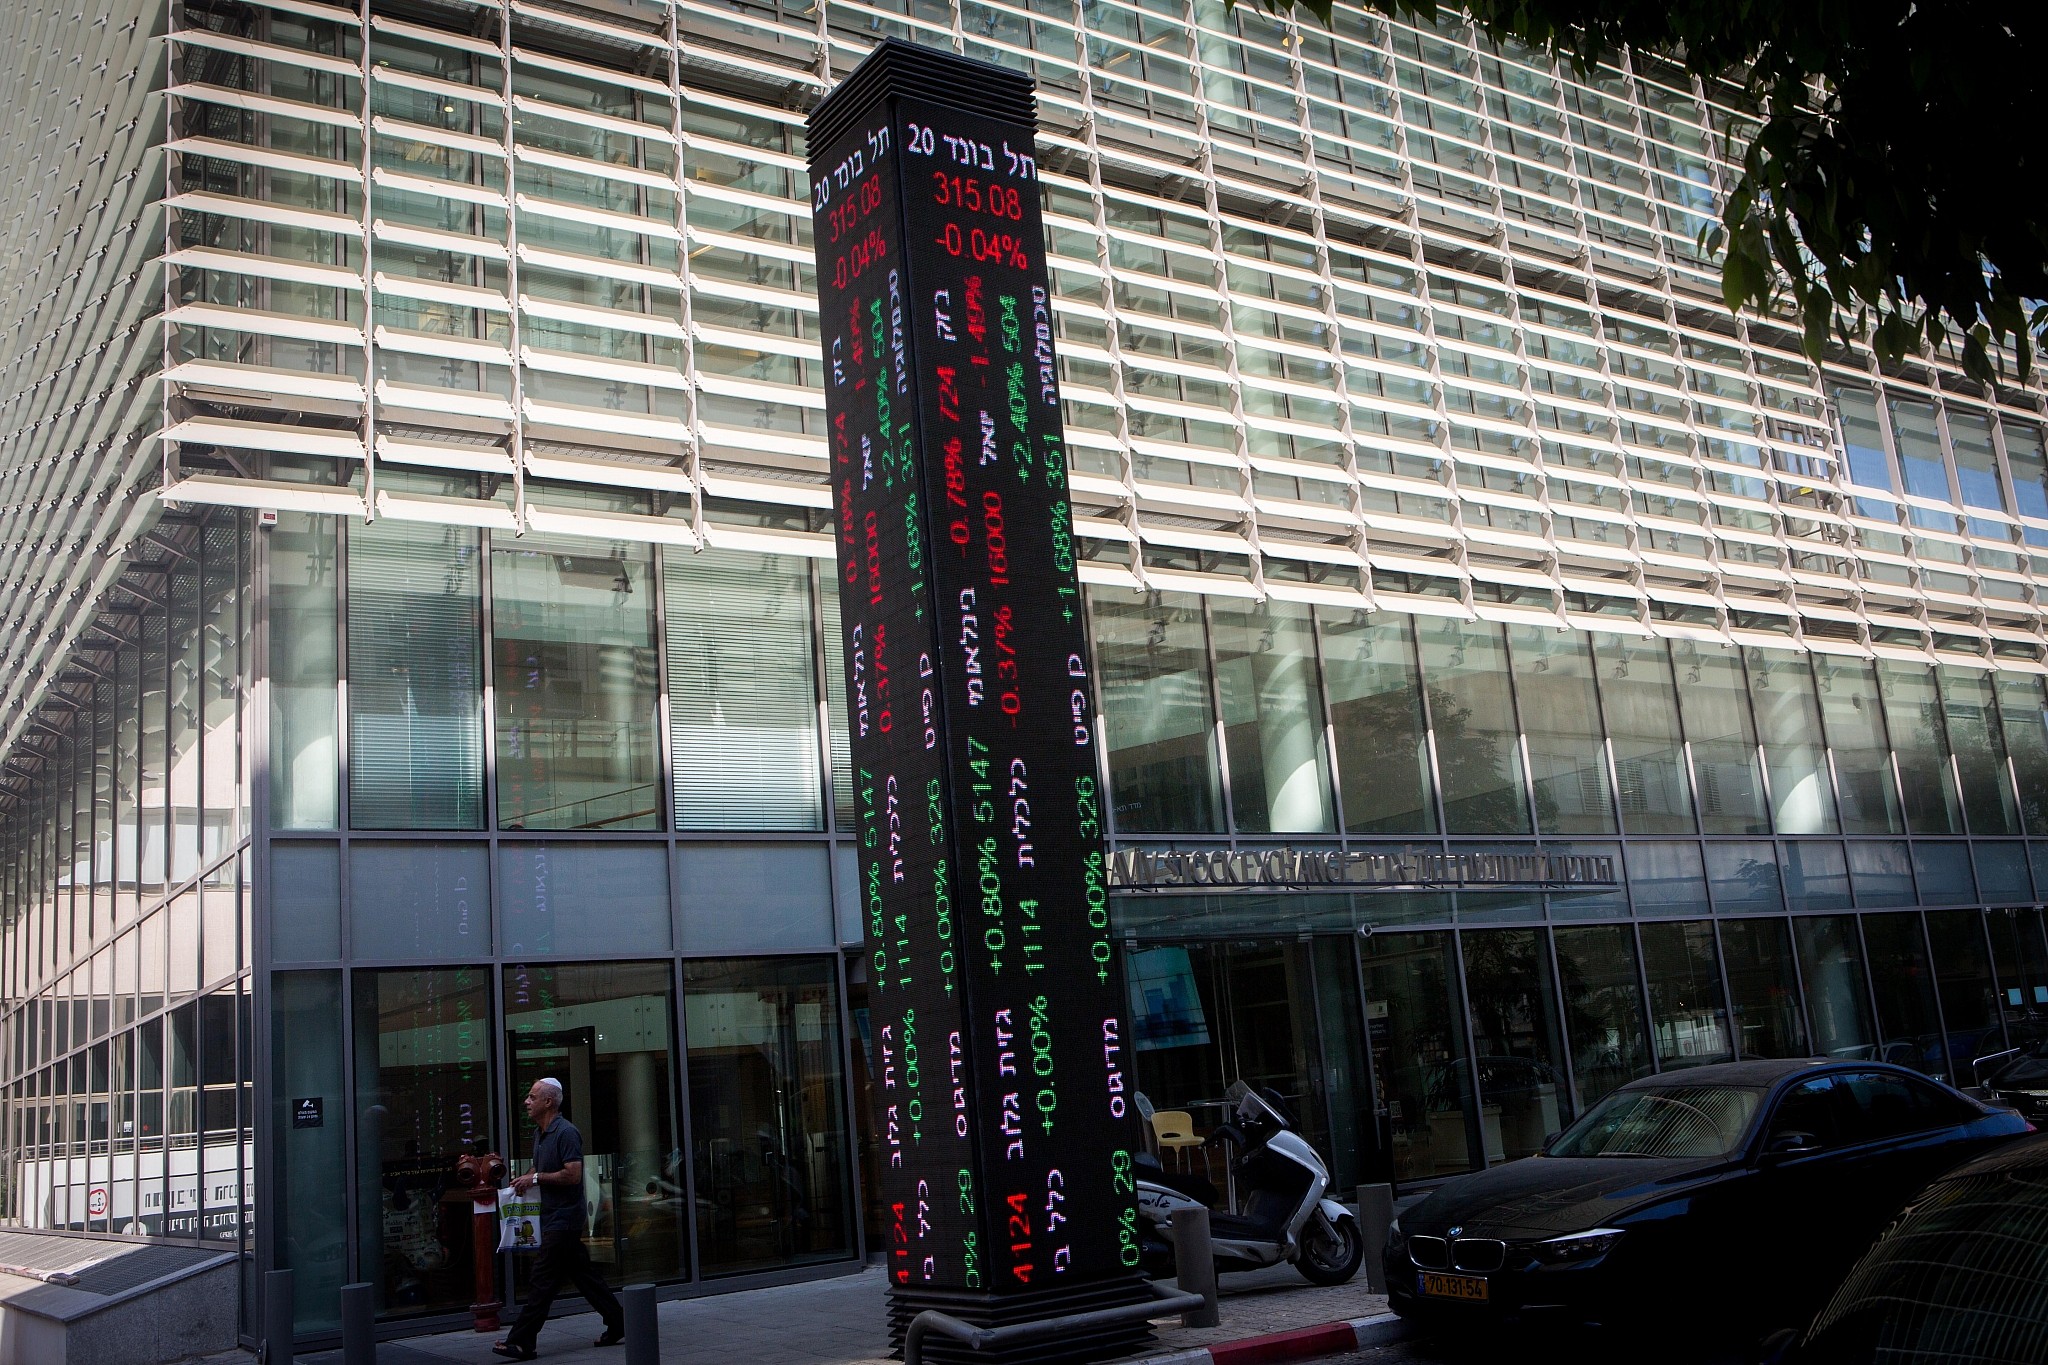 Tel Aviv Stock Exchange starts English website for corporate filings